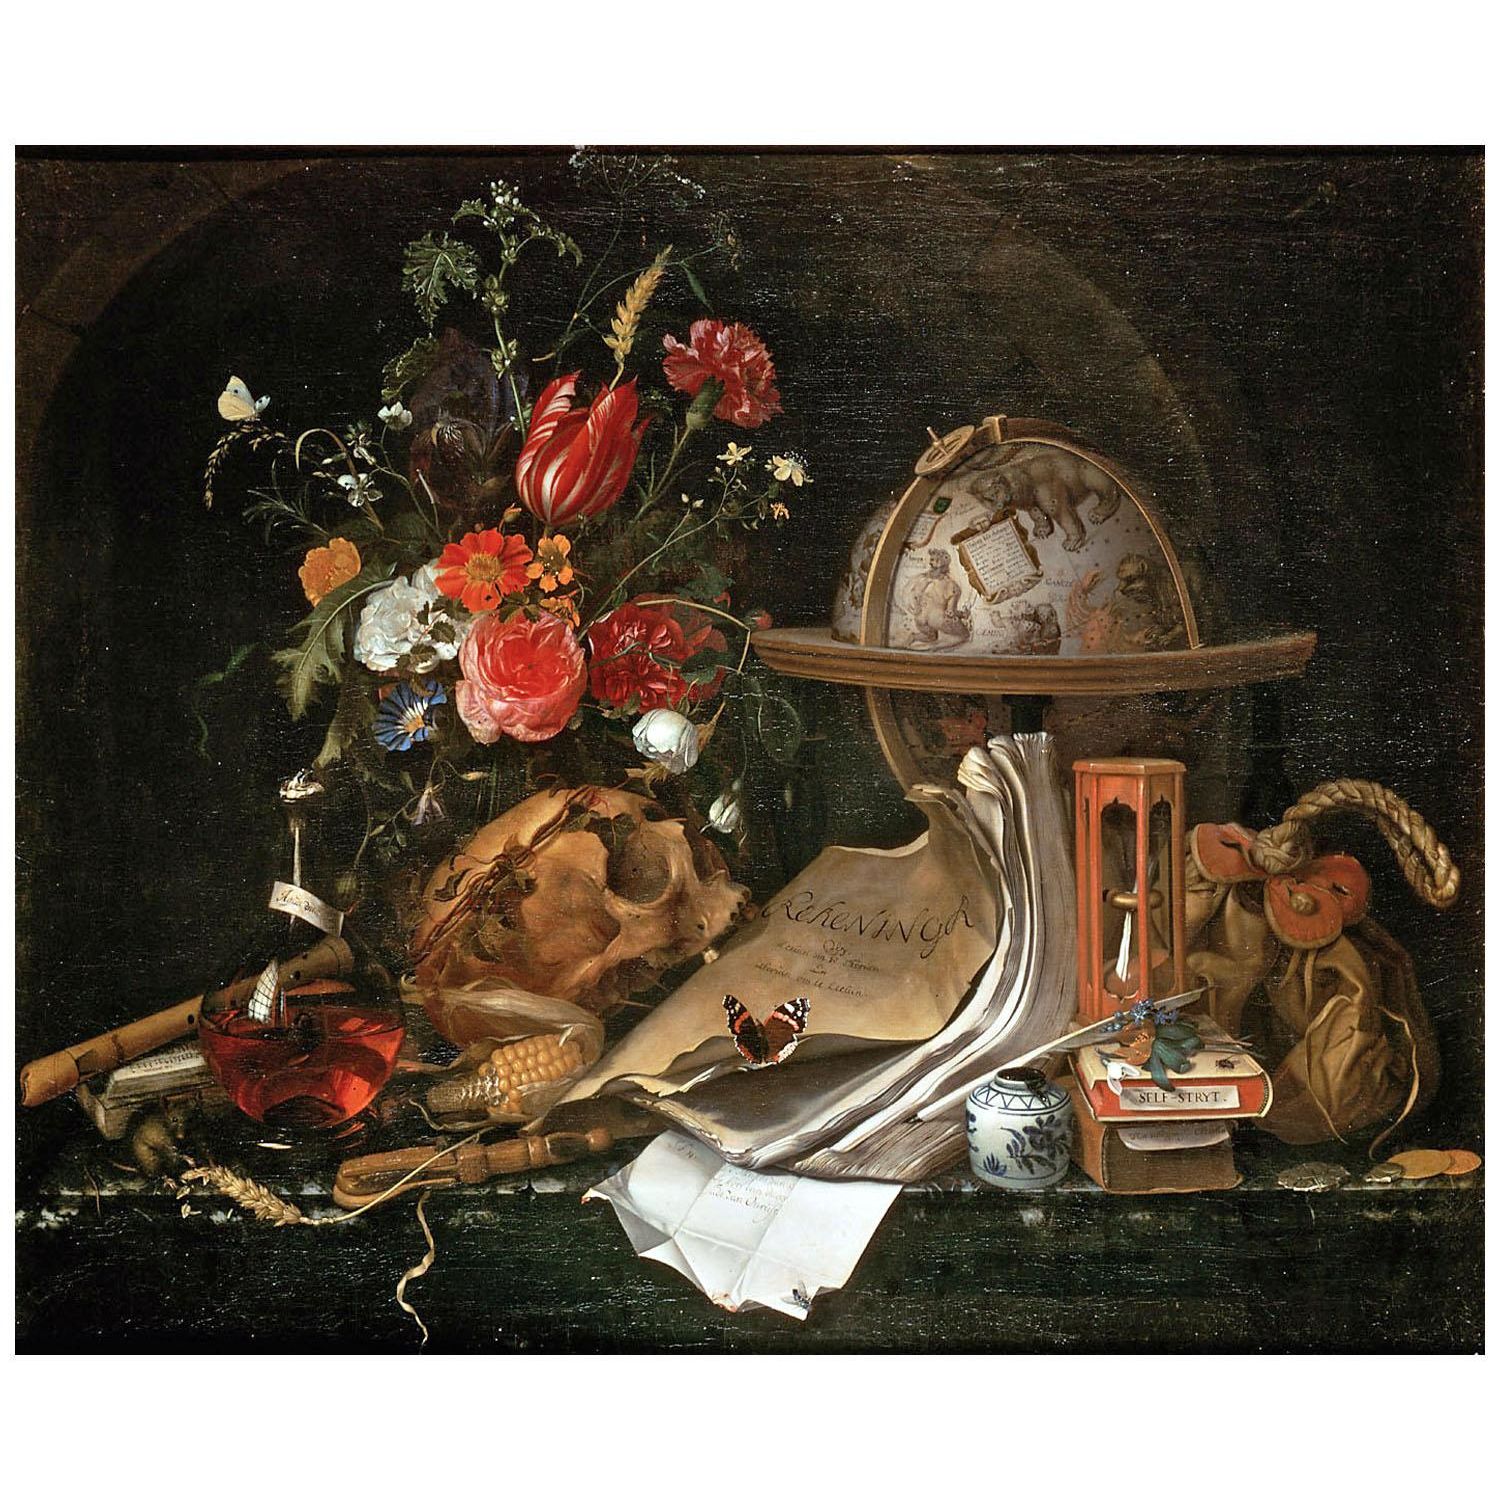 Maria van Oosterwijck. Vanitas Still Life. 1668. KHM Wien